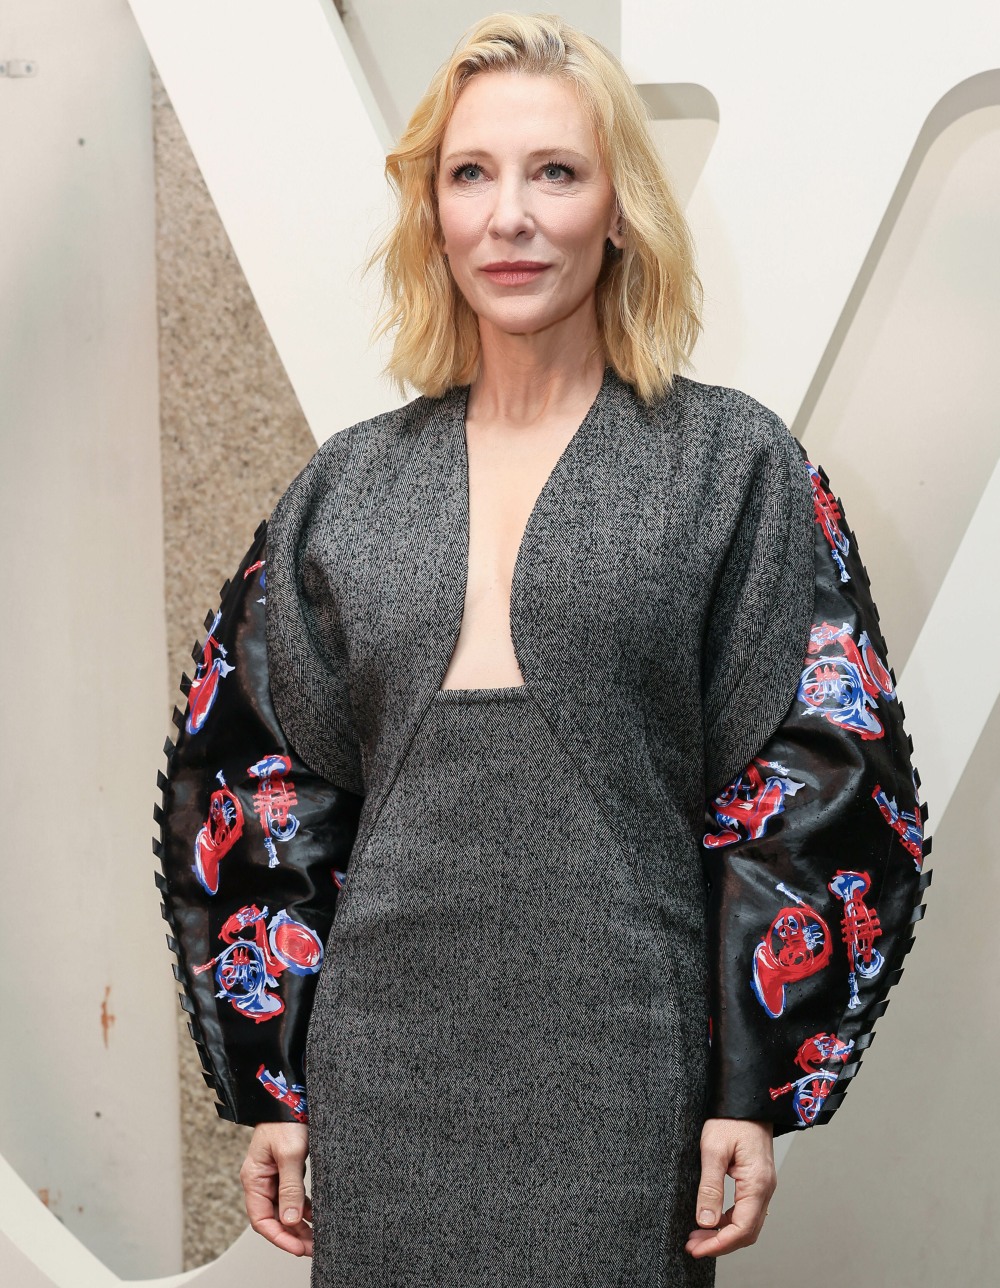 şirret | Cate Blanchett, prodüksiyonların bir kadınla ve her iş için POC ile röportaj yapmasını şart koşuyor